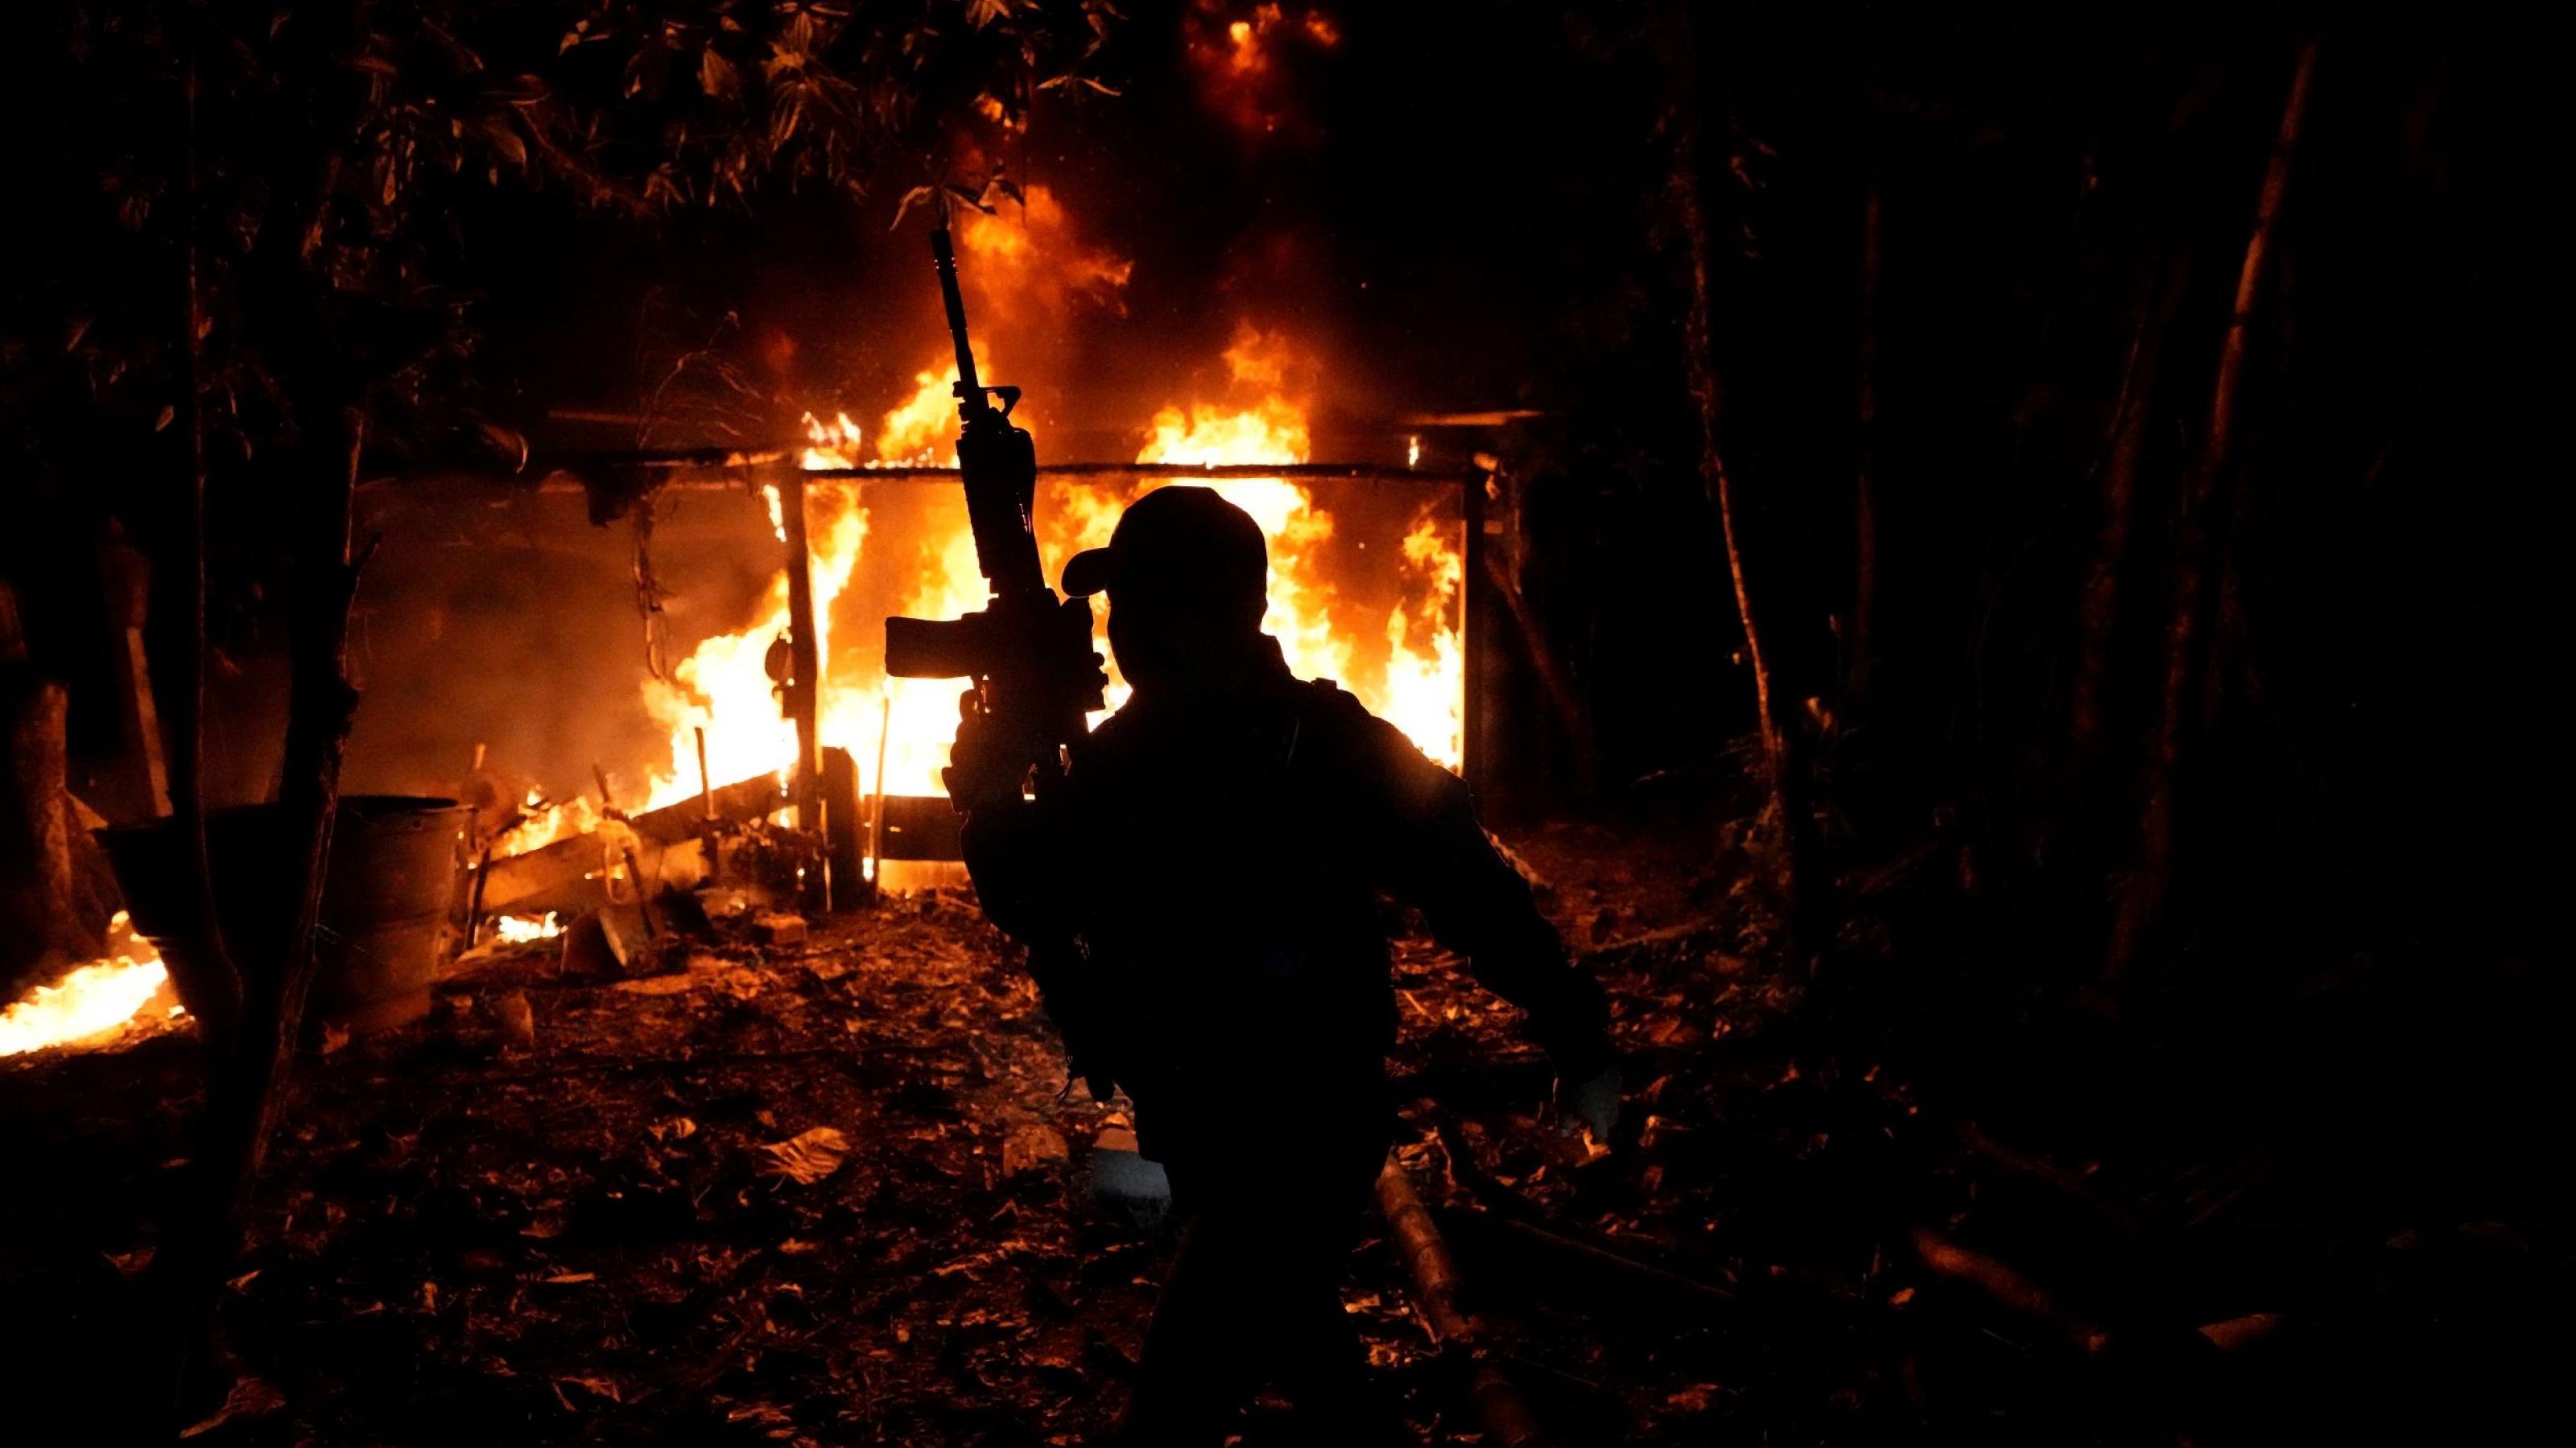 Vor dem Hintergrund eines im Dunkeln brennenden Hauses sieht man die Silhouette eines Mannes, der ein Maschinengewehr nach oben hält